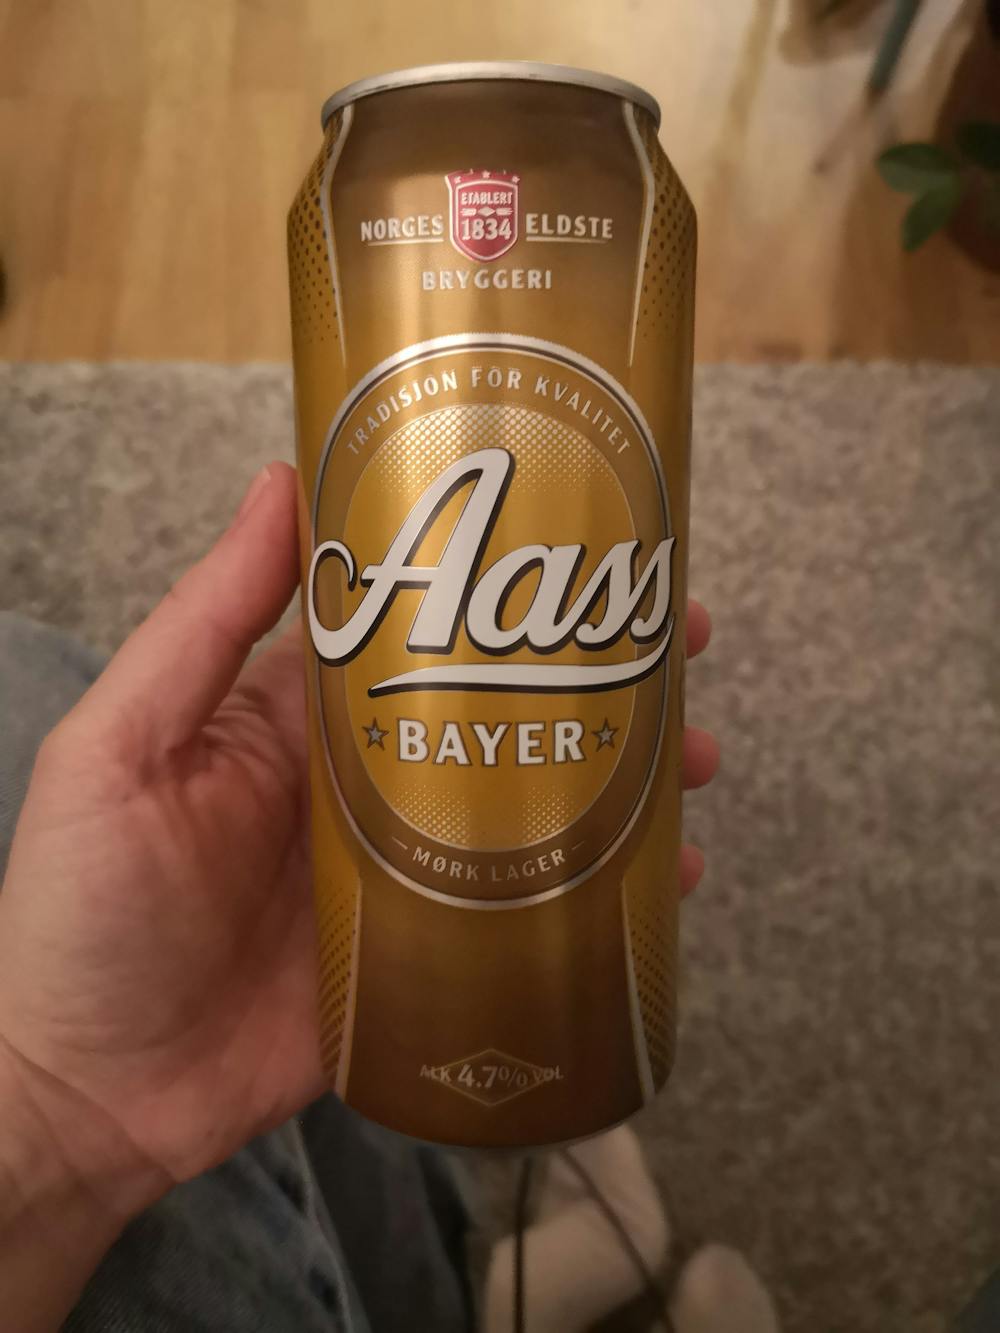 Bayer, Aass